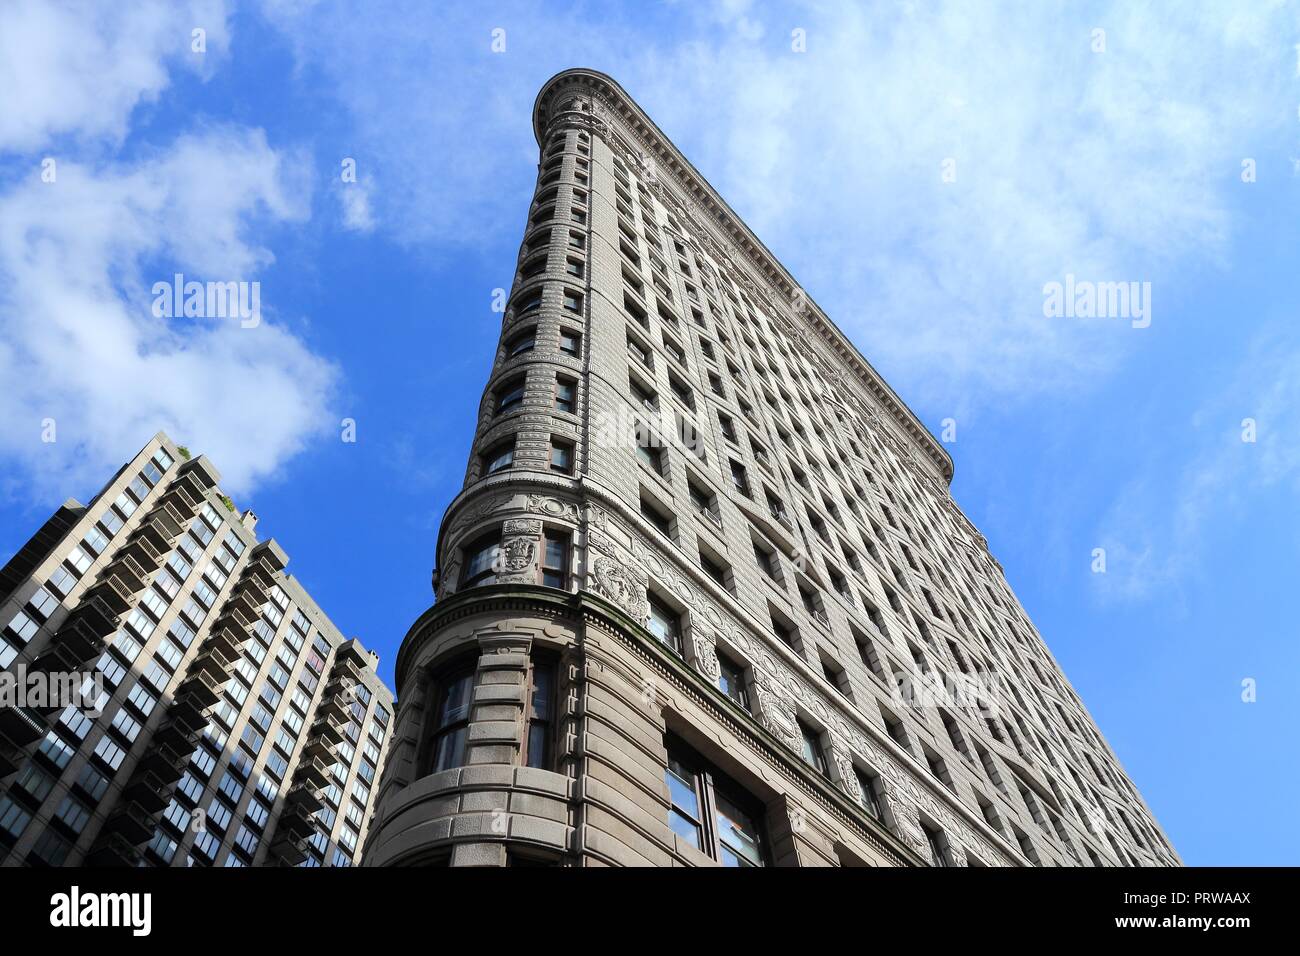 NEW YORK, USA - Juli 3, 2013: Flatiron Building in New York. Flatiron ist eines der bekanntesten Gebäude in New York und wird als nationale Histo Stockfoto